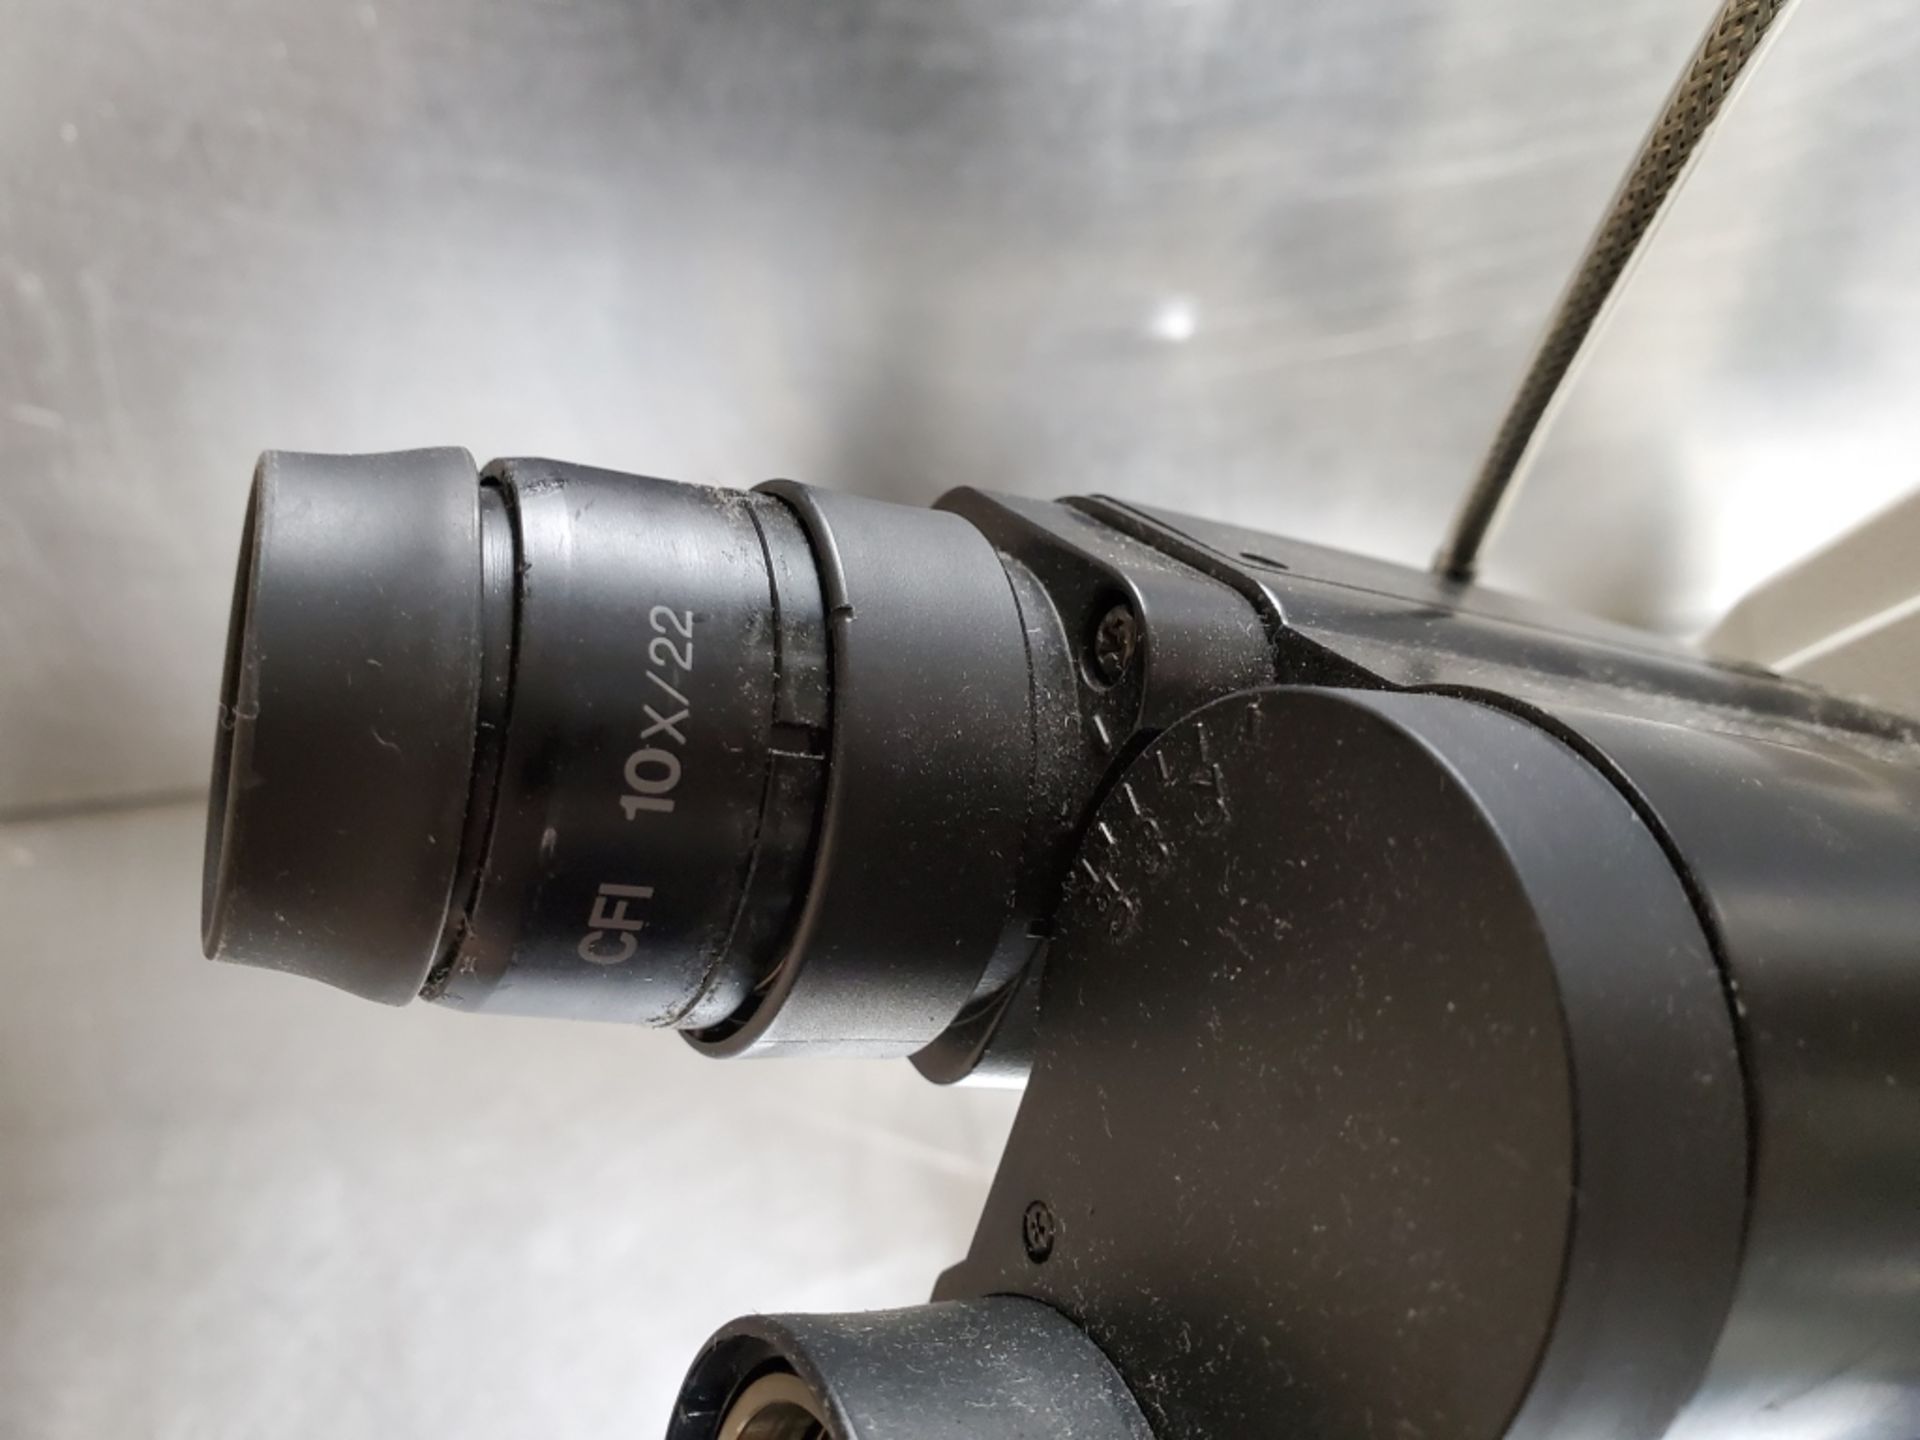 Nikon Eclipse Model E600 Microscope - Image 13 of 15